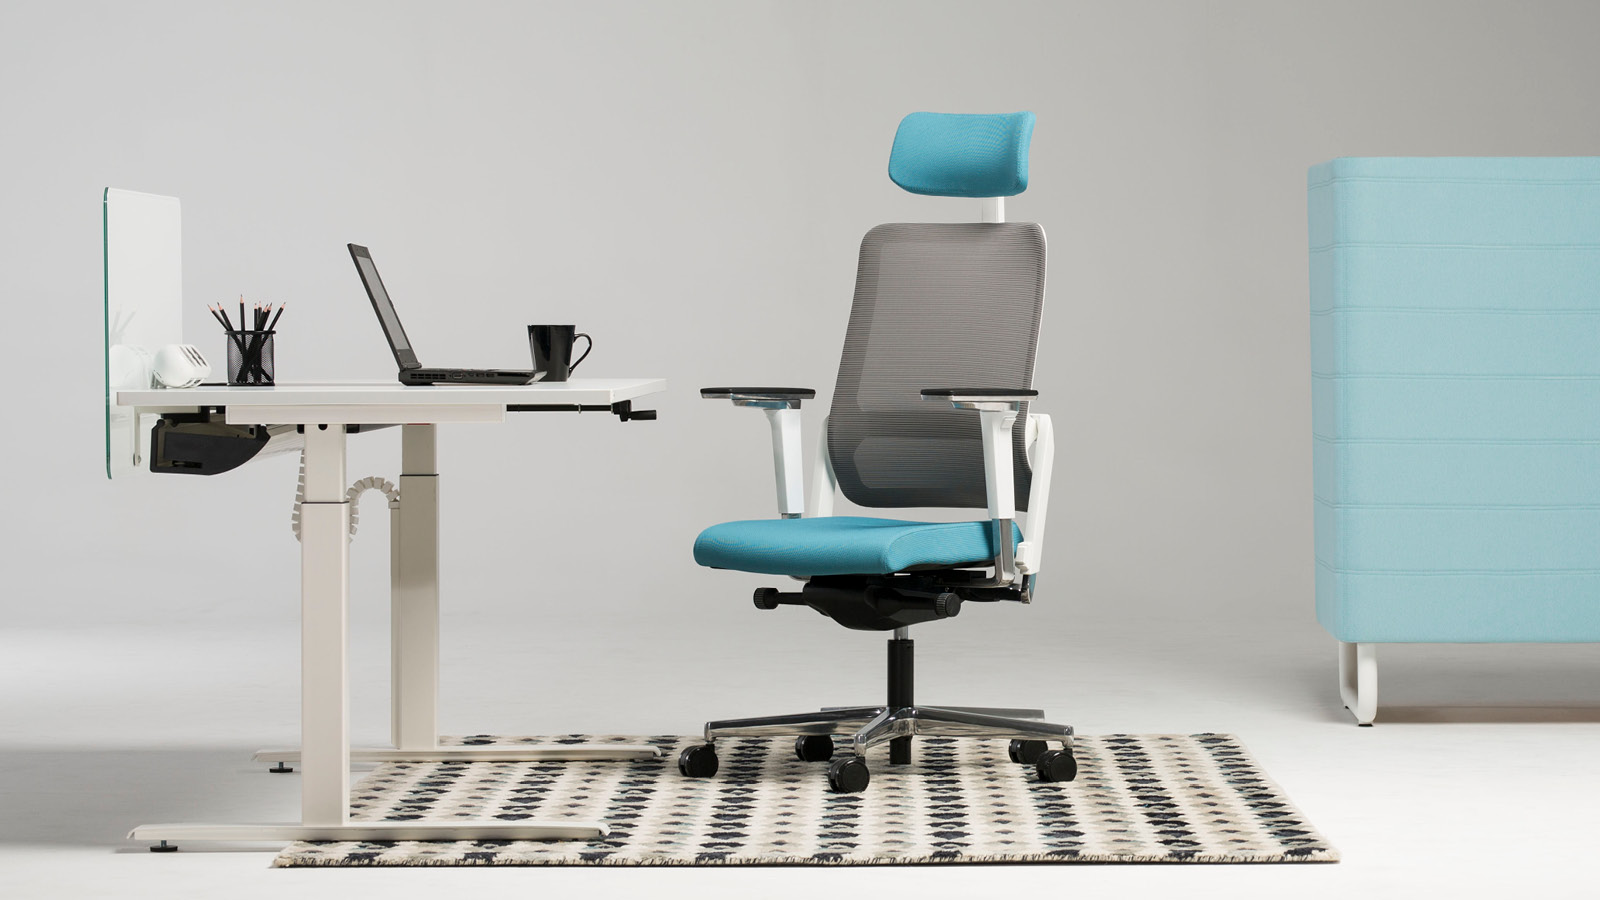 Minimalistyczne stanowisko pracy - białe biurko na stelażu metalowym wraz z niebiesko-popielatym krzesłem z podłokietnikami.